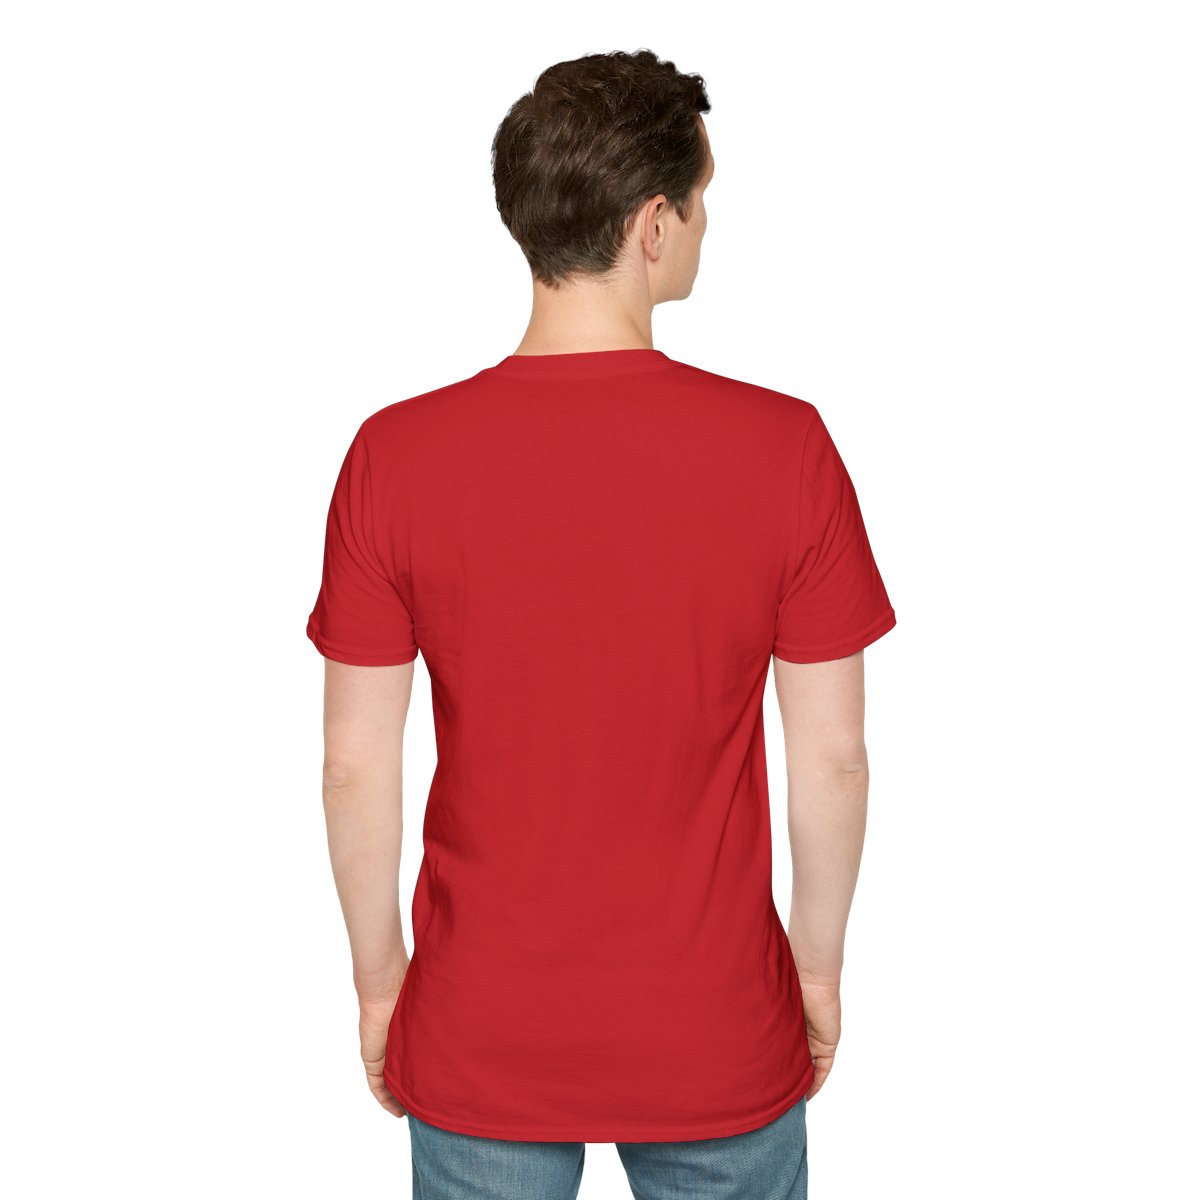 Unisex Softstyle T-Shirt Circle Logo 5 colors product thumbnail image